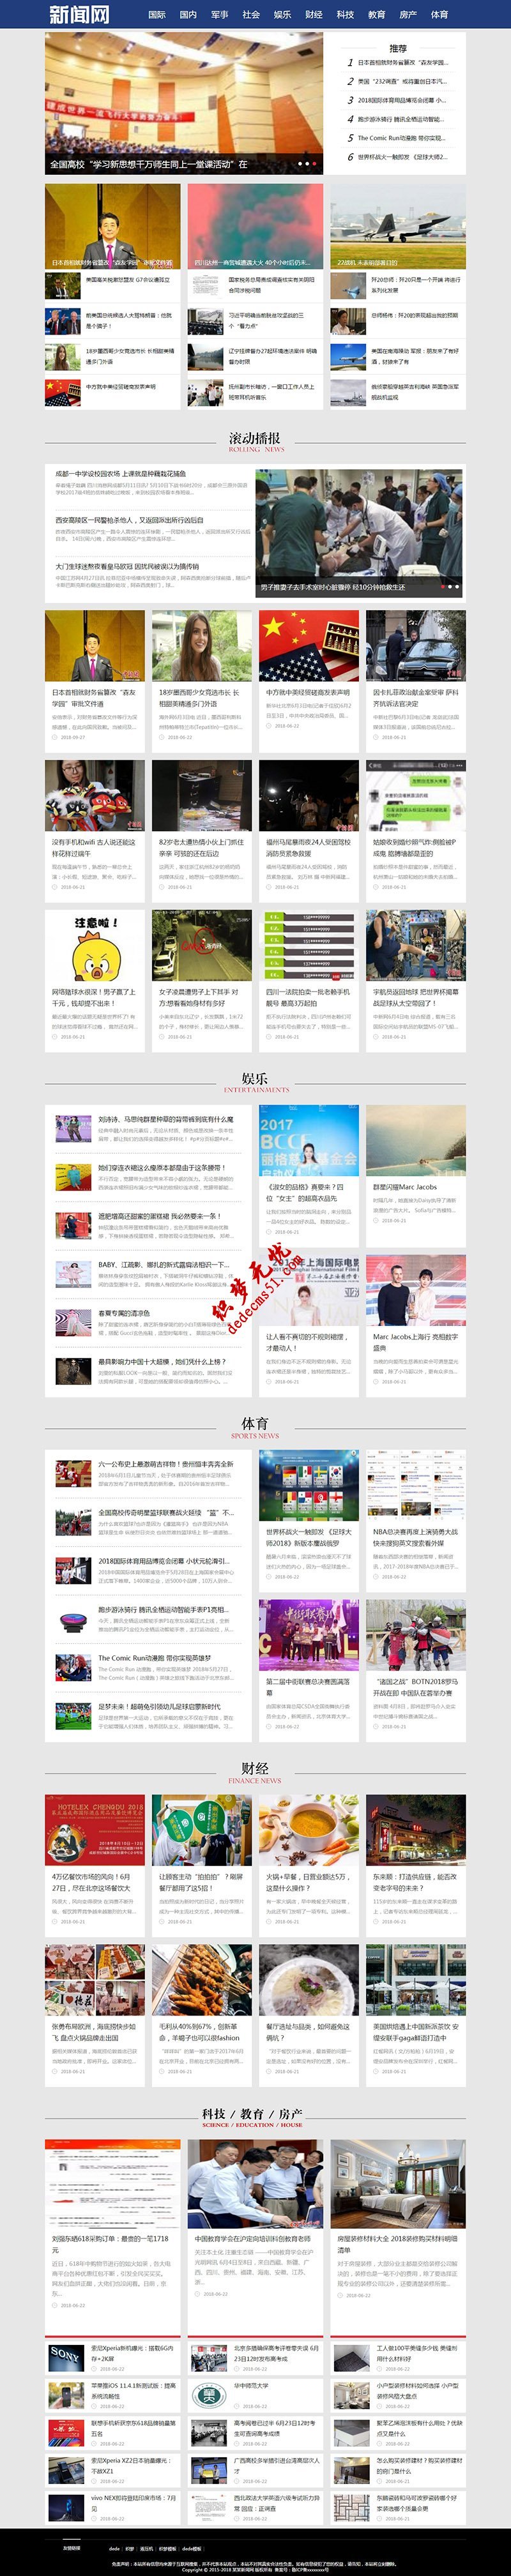 蓝色社会娱新闻资讯博客等网站dede织梦MIP模板下载(三端同步)